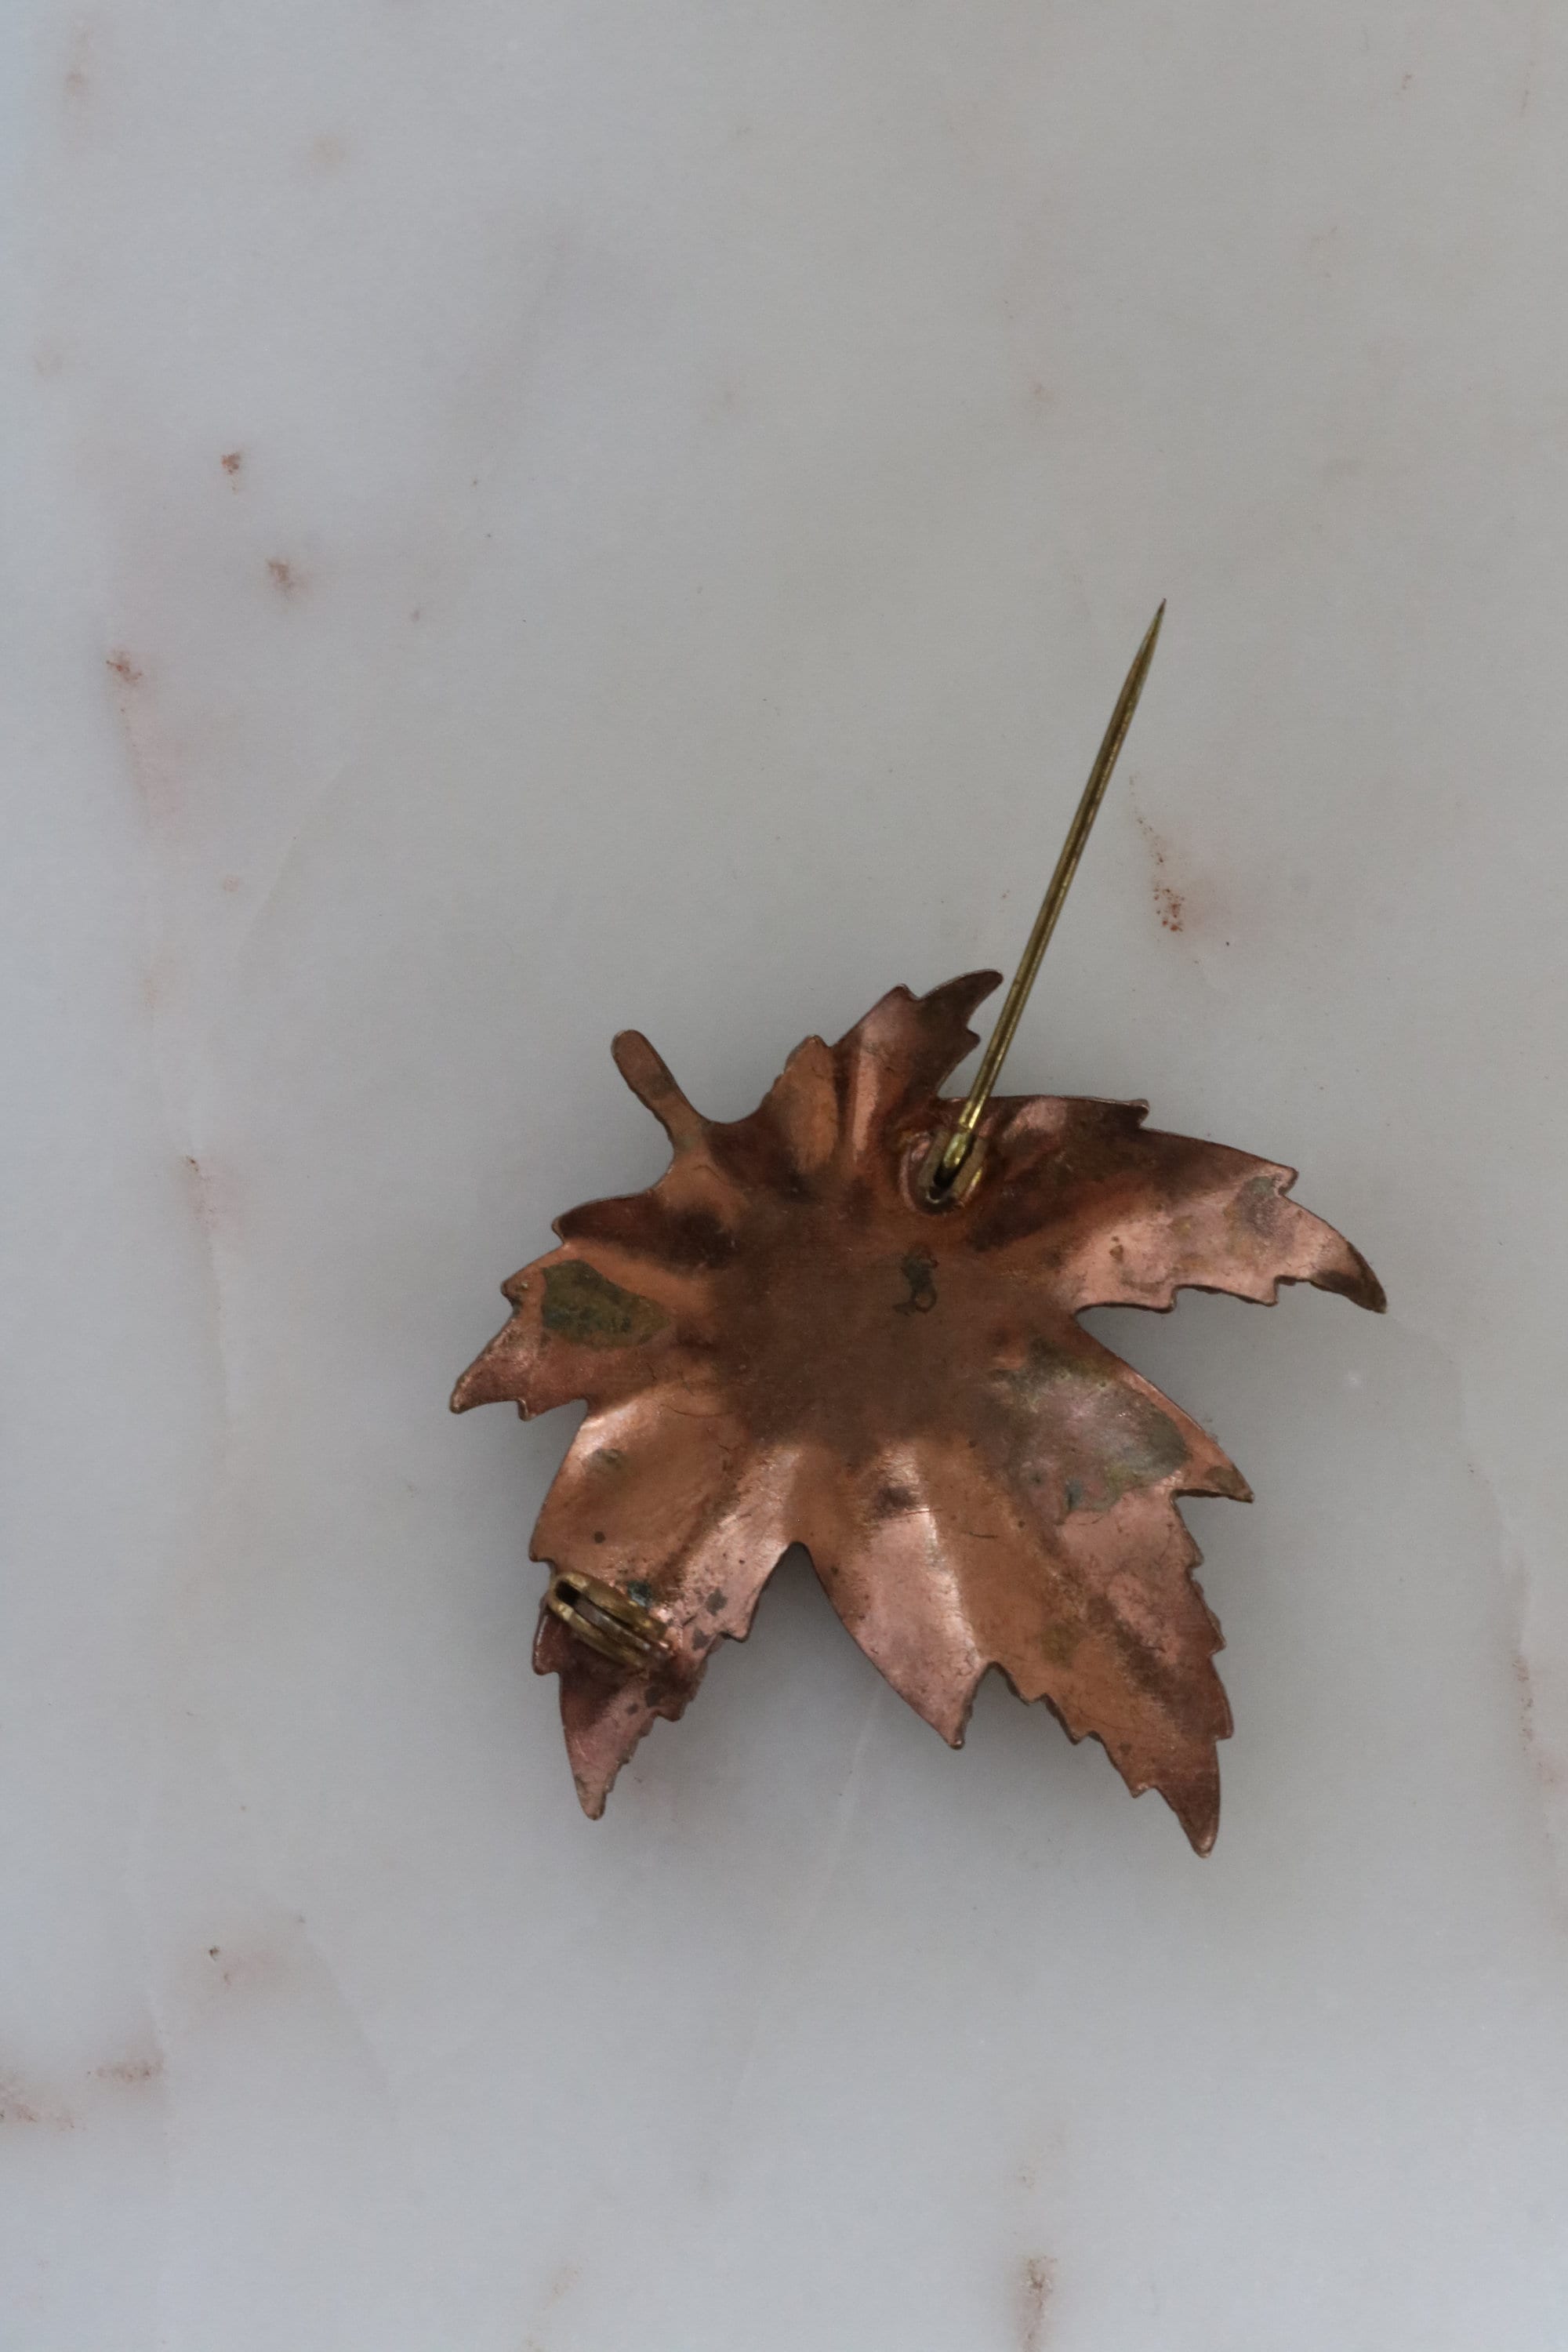 Vintage Copper & Orange Preserved Maple Leaf Brooch – The Mustard